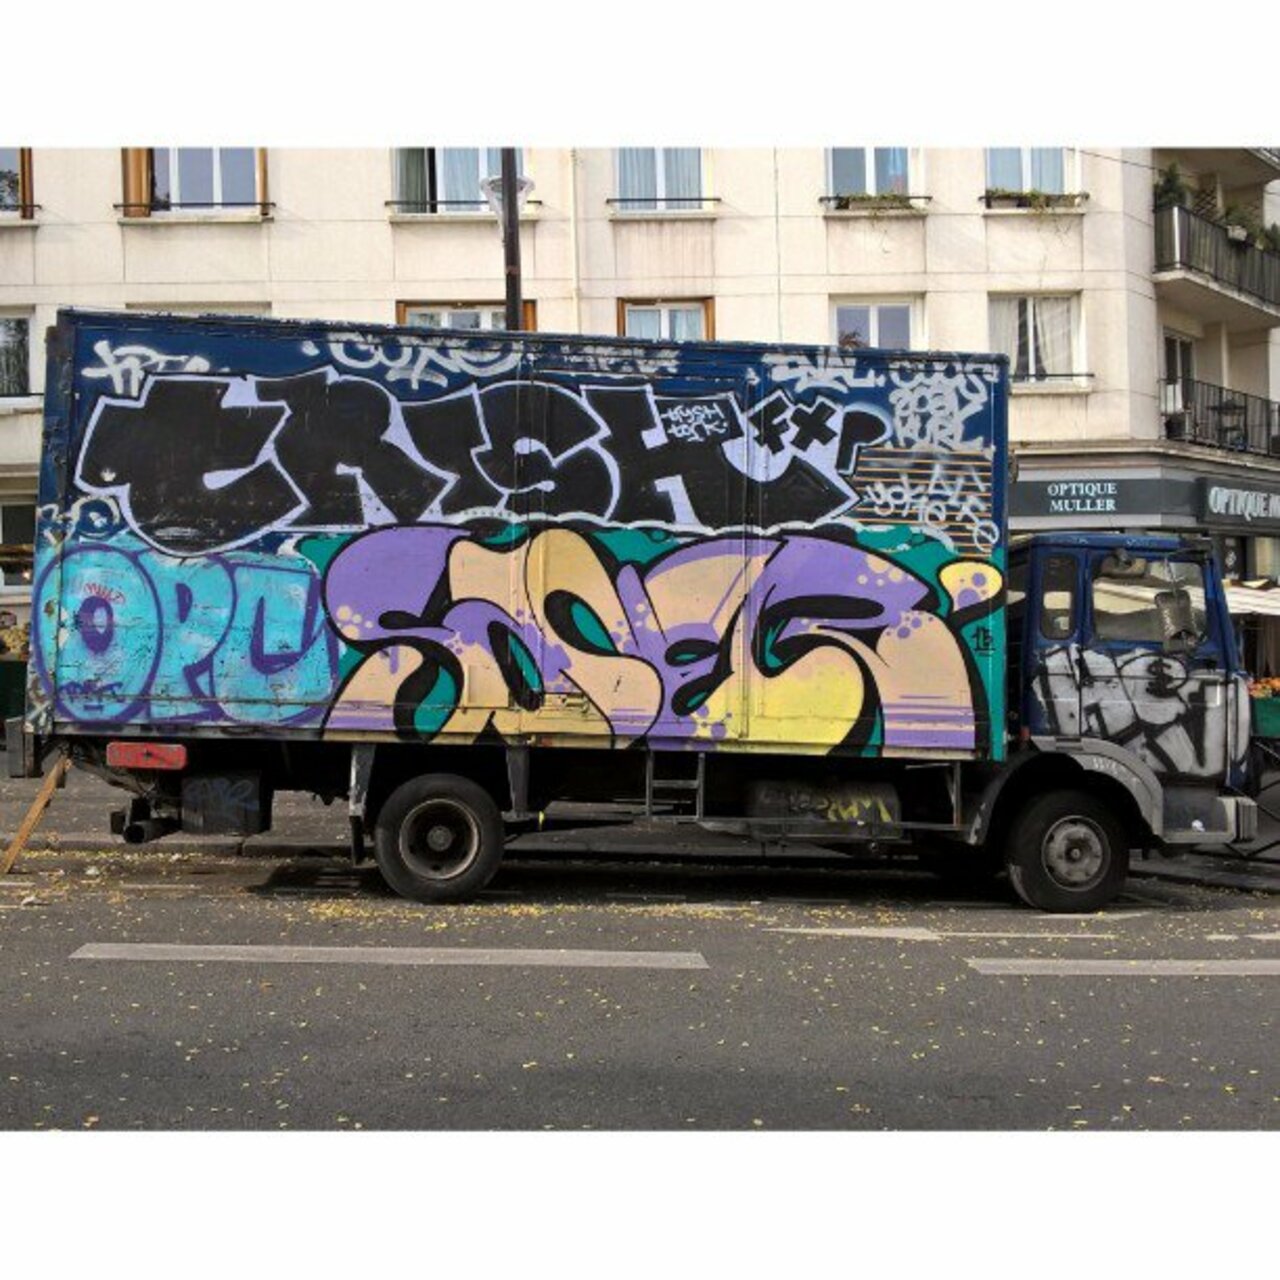 #Paris #graffiti photo by @maxdimontemarciano http://ift.tt/1jGjjNl #StreetArt https://t.co/MtJ4p1q5sX